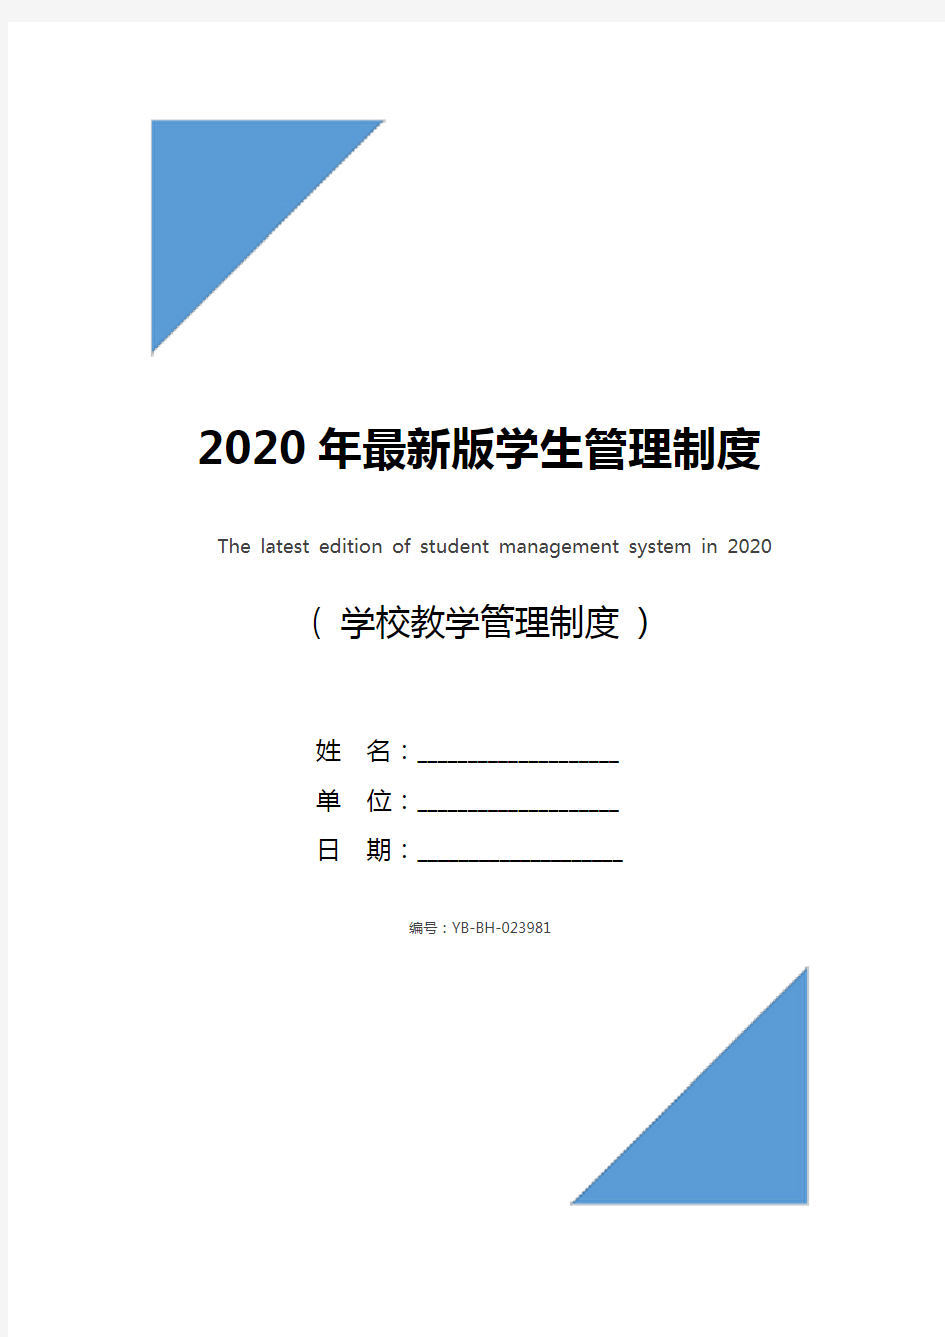 2020年最新版学生管理制度